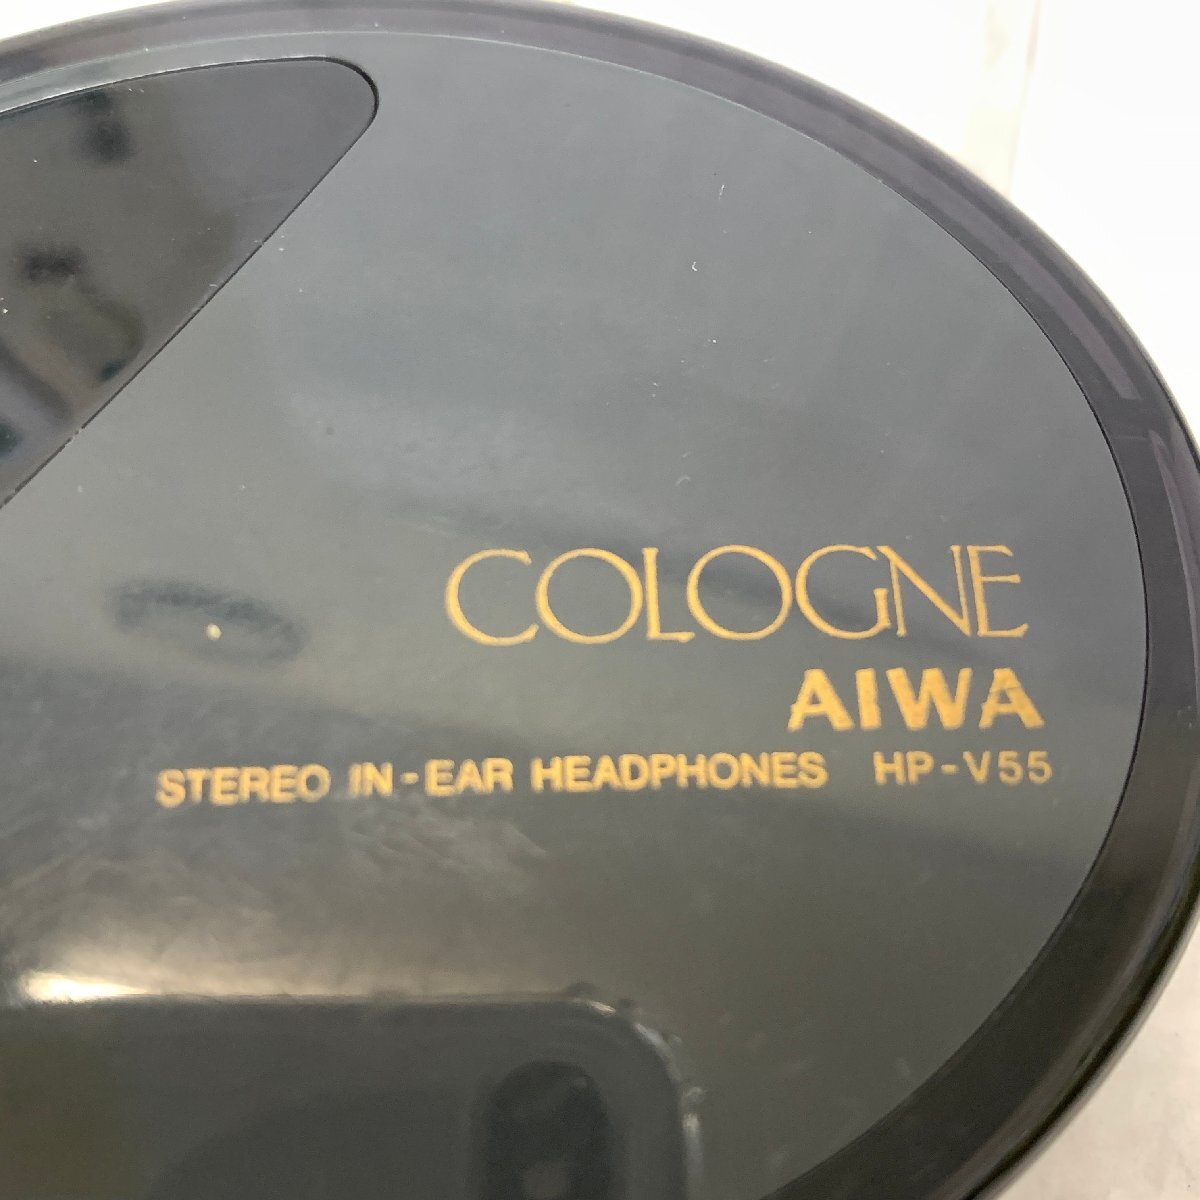 s001 A3.1 хранение товар AIWA Aiwa HP-V55 COLOGNE stereo in-ear headphones труба ho n наматывать брать . слуховай аппарат наушники подлинная вещь редкость 